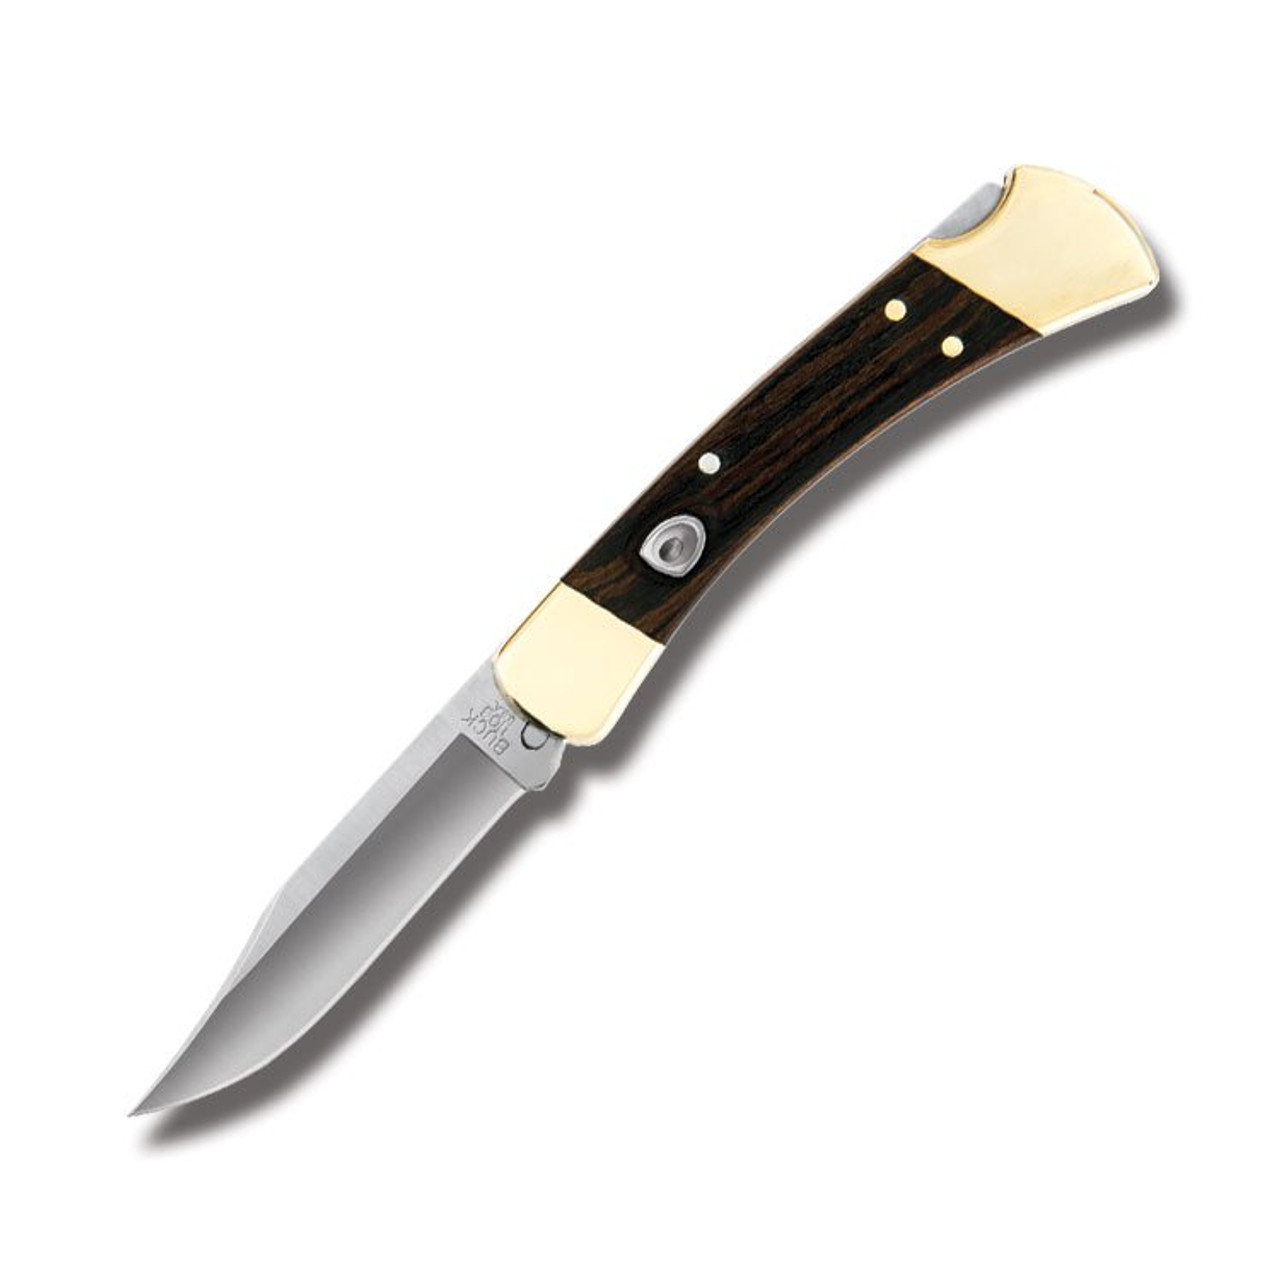 Buck EdgeTek Ultra Steel 10 Inch - Smoky Mountain Knife Works